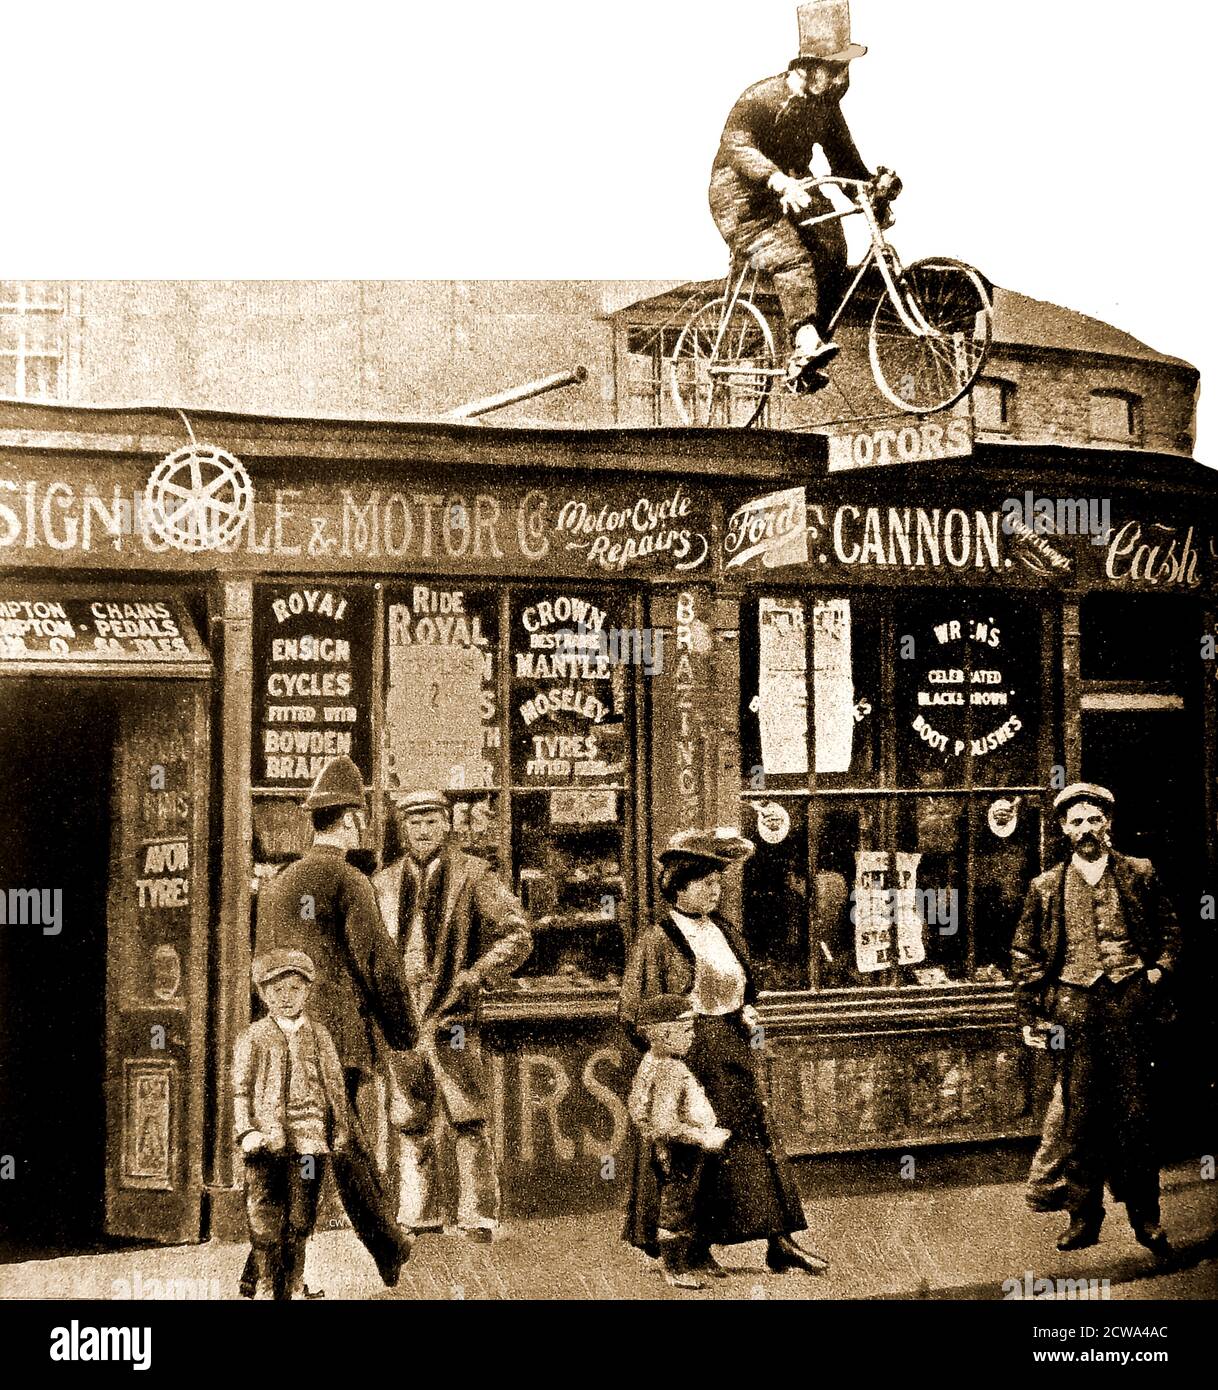 1908 - un depot iniziale di moto e moto a Mitcham, (un'area ora all'interno del London Borough of Merton) UK, completo di un insolito ma realistico segno ciclistico. Nella finestra sono presenti annunci per pneumatici Crown, mantle & Moseley; Royal Ensign Cycles; Bowden Brakes; Avon. Il locale accanto (F Cannon) sembra essere un negozio di articoli da collezione, ma vende anche scarpe da calcio Wrens. Foto Stock